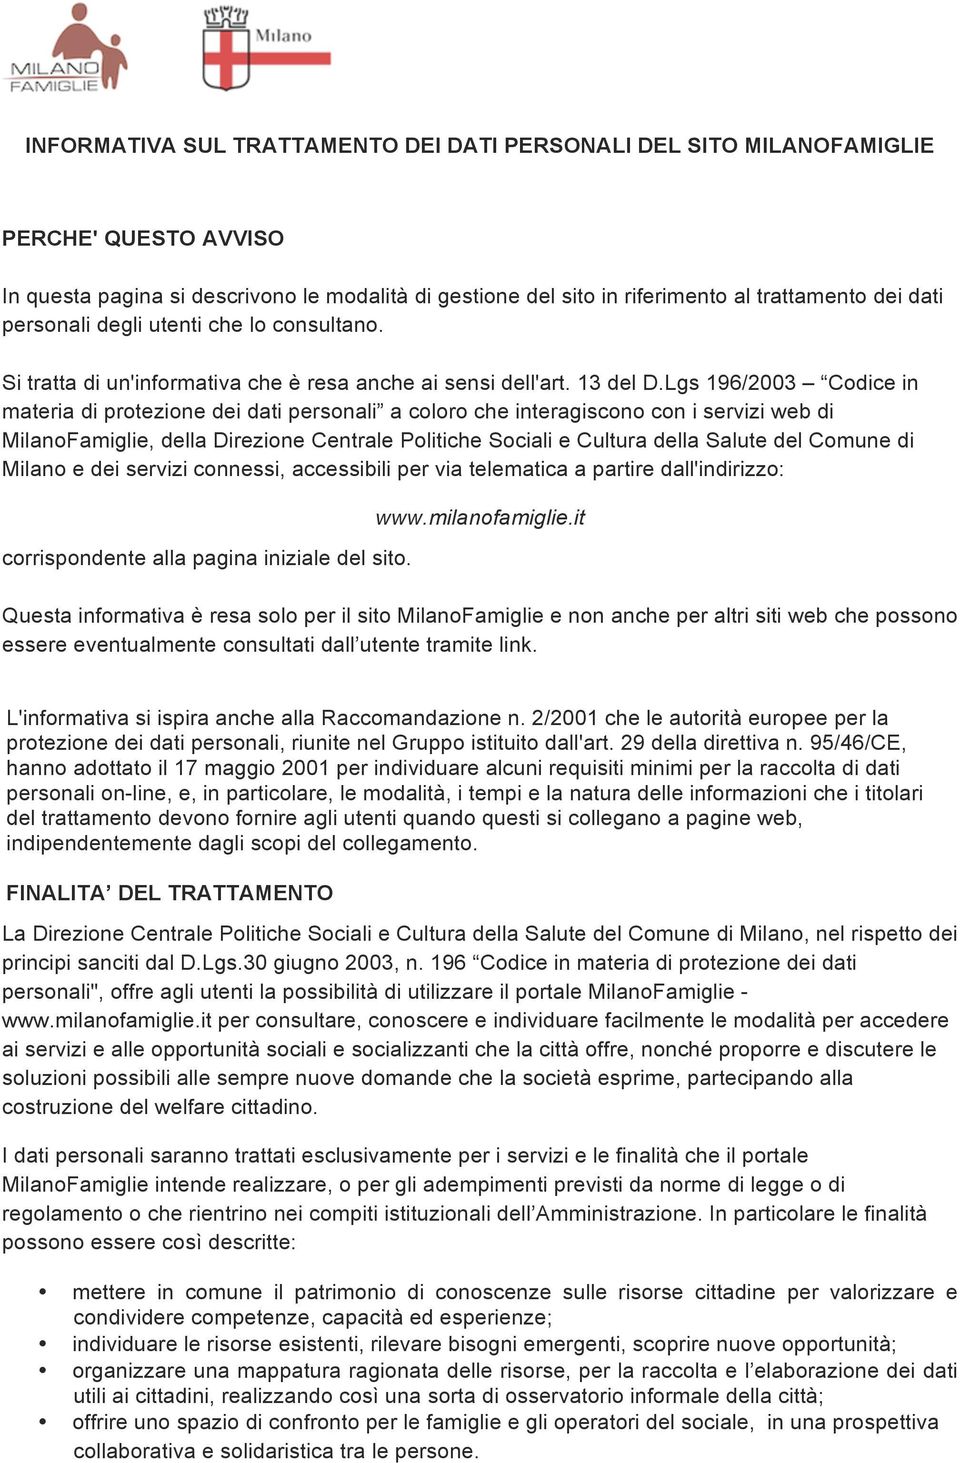 Lgs 196/2003 Codice in materia di protezione dei dati personali a coloro che interagiscono con i servizi web di MilanoFamiglie, della Direzione Centrale Politiche Sociali e Cultura della Salute del